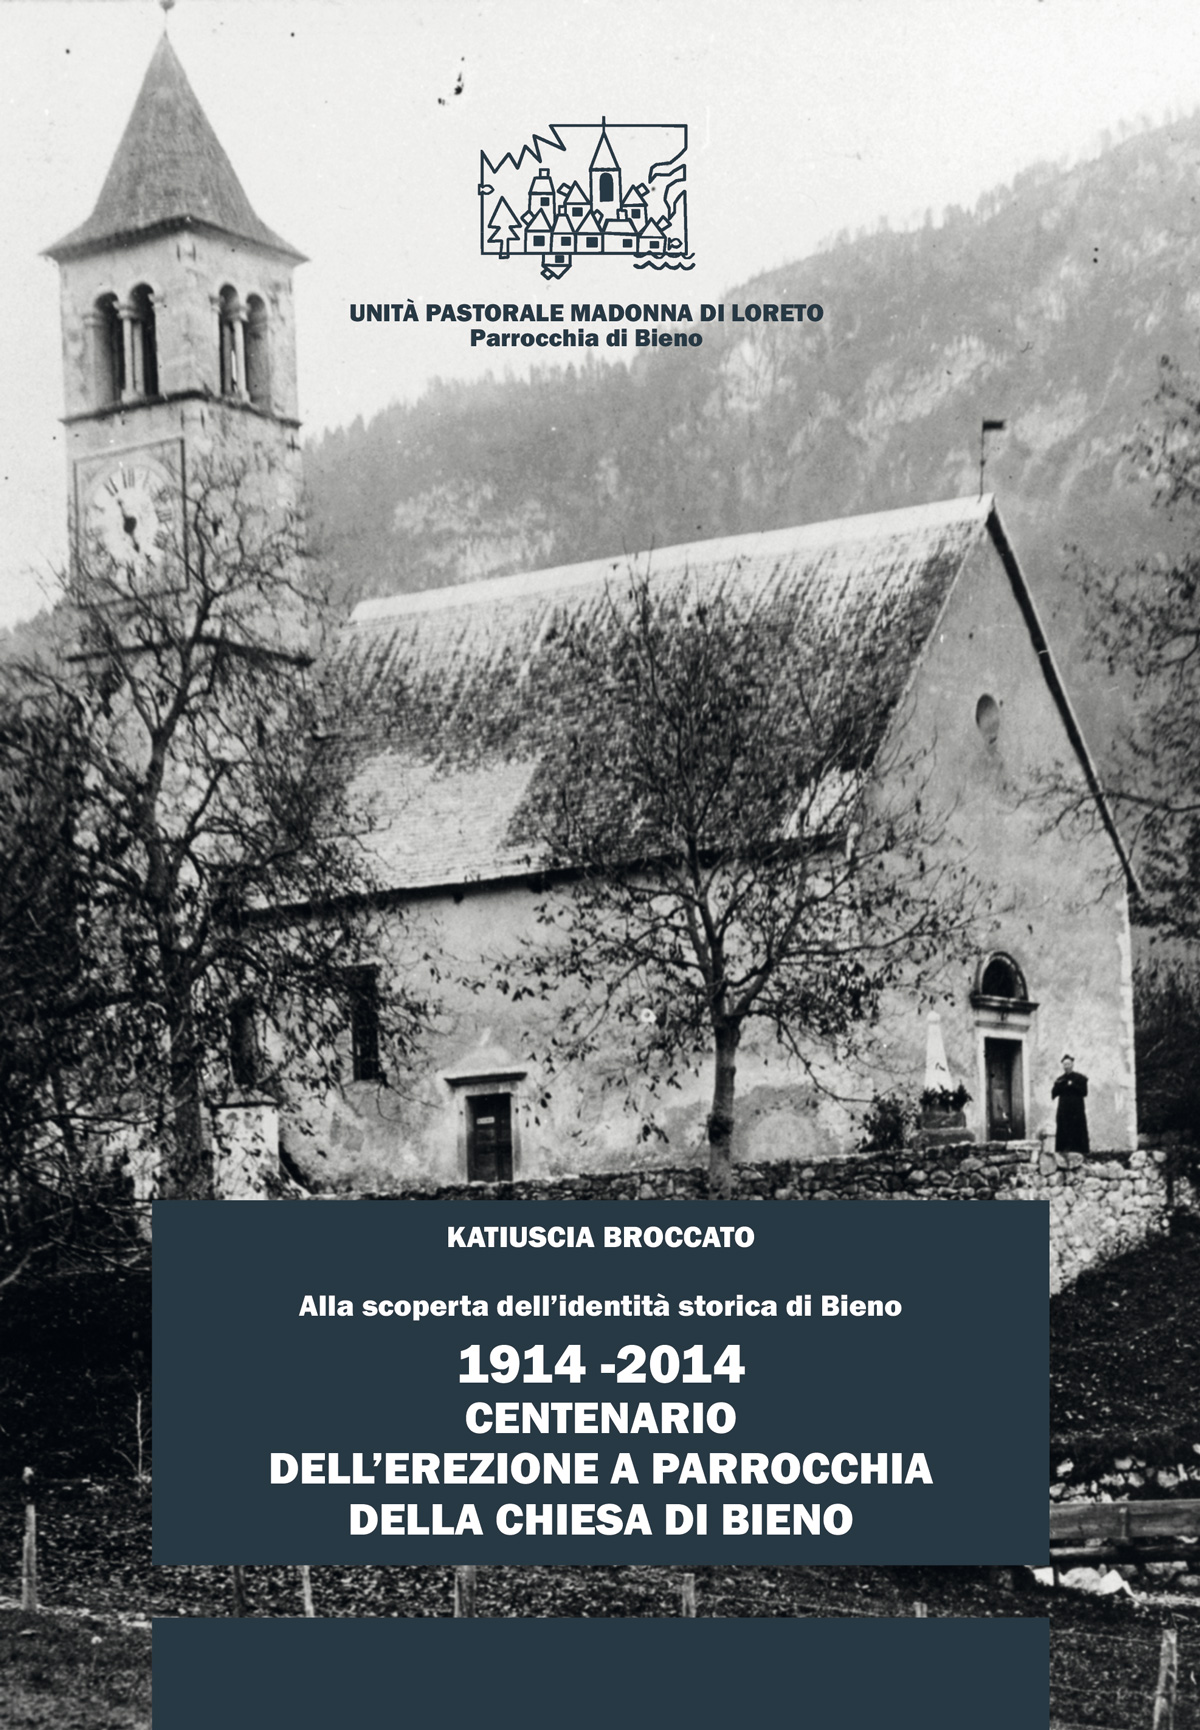 1914-2014: Centenario dell’erezione a parrocchia della chiesa di Bieno